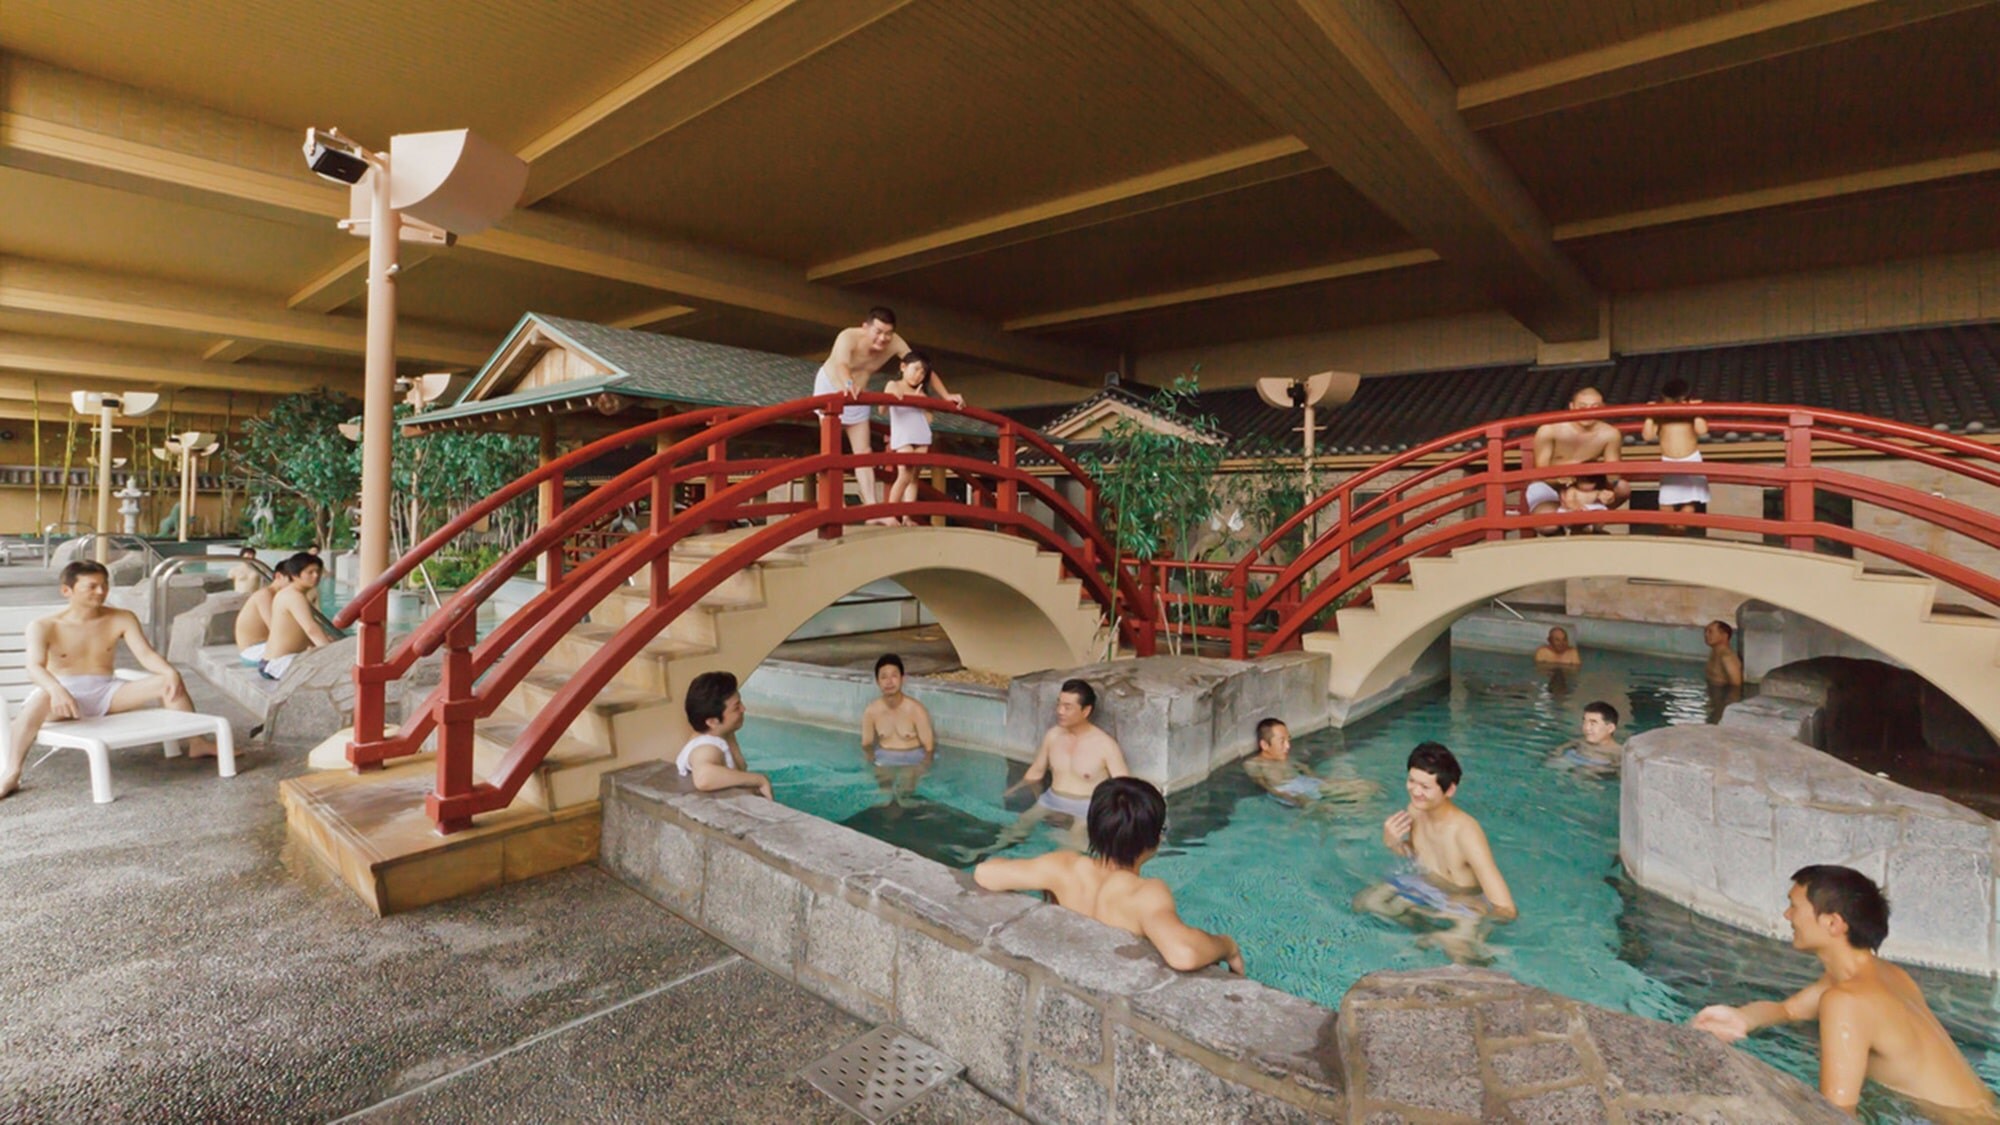 ** [Ryugu-tei Ryugu-no-Yu: Observatory large communal bath Uchiyu] A large communal bath "Senju-no-Yu" that you can enjoy like a pool.